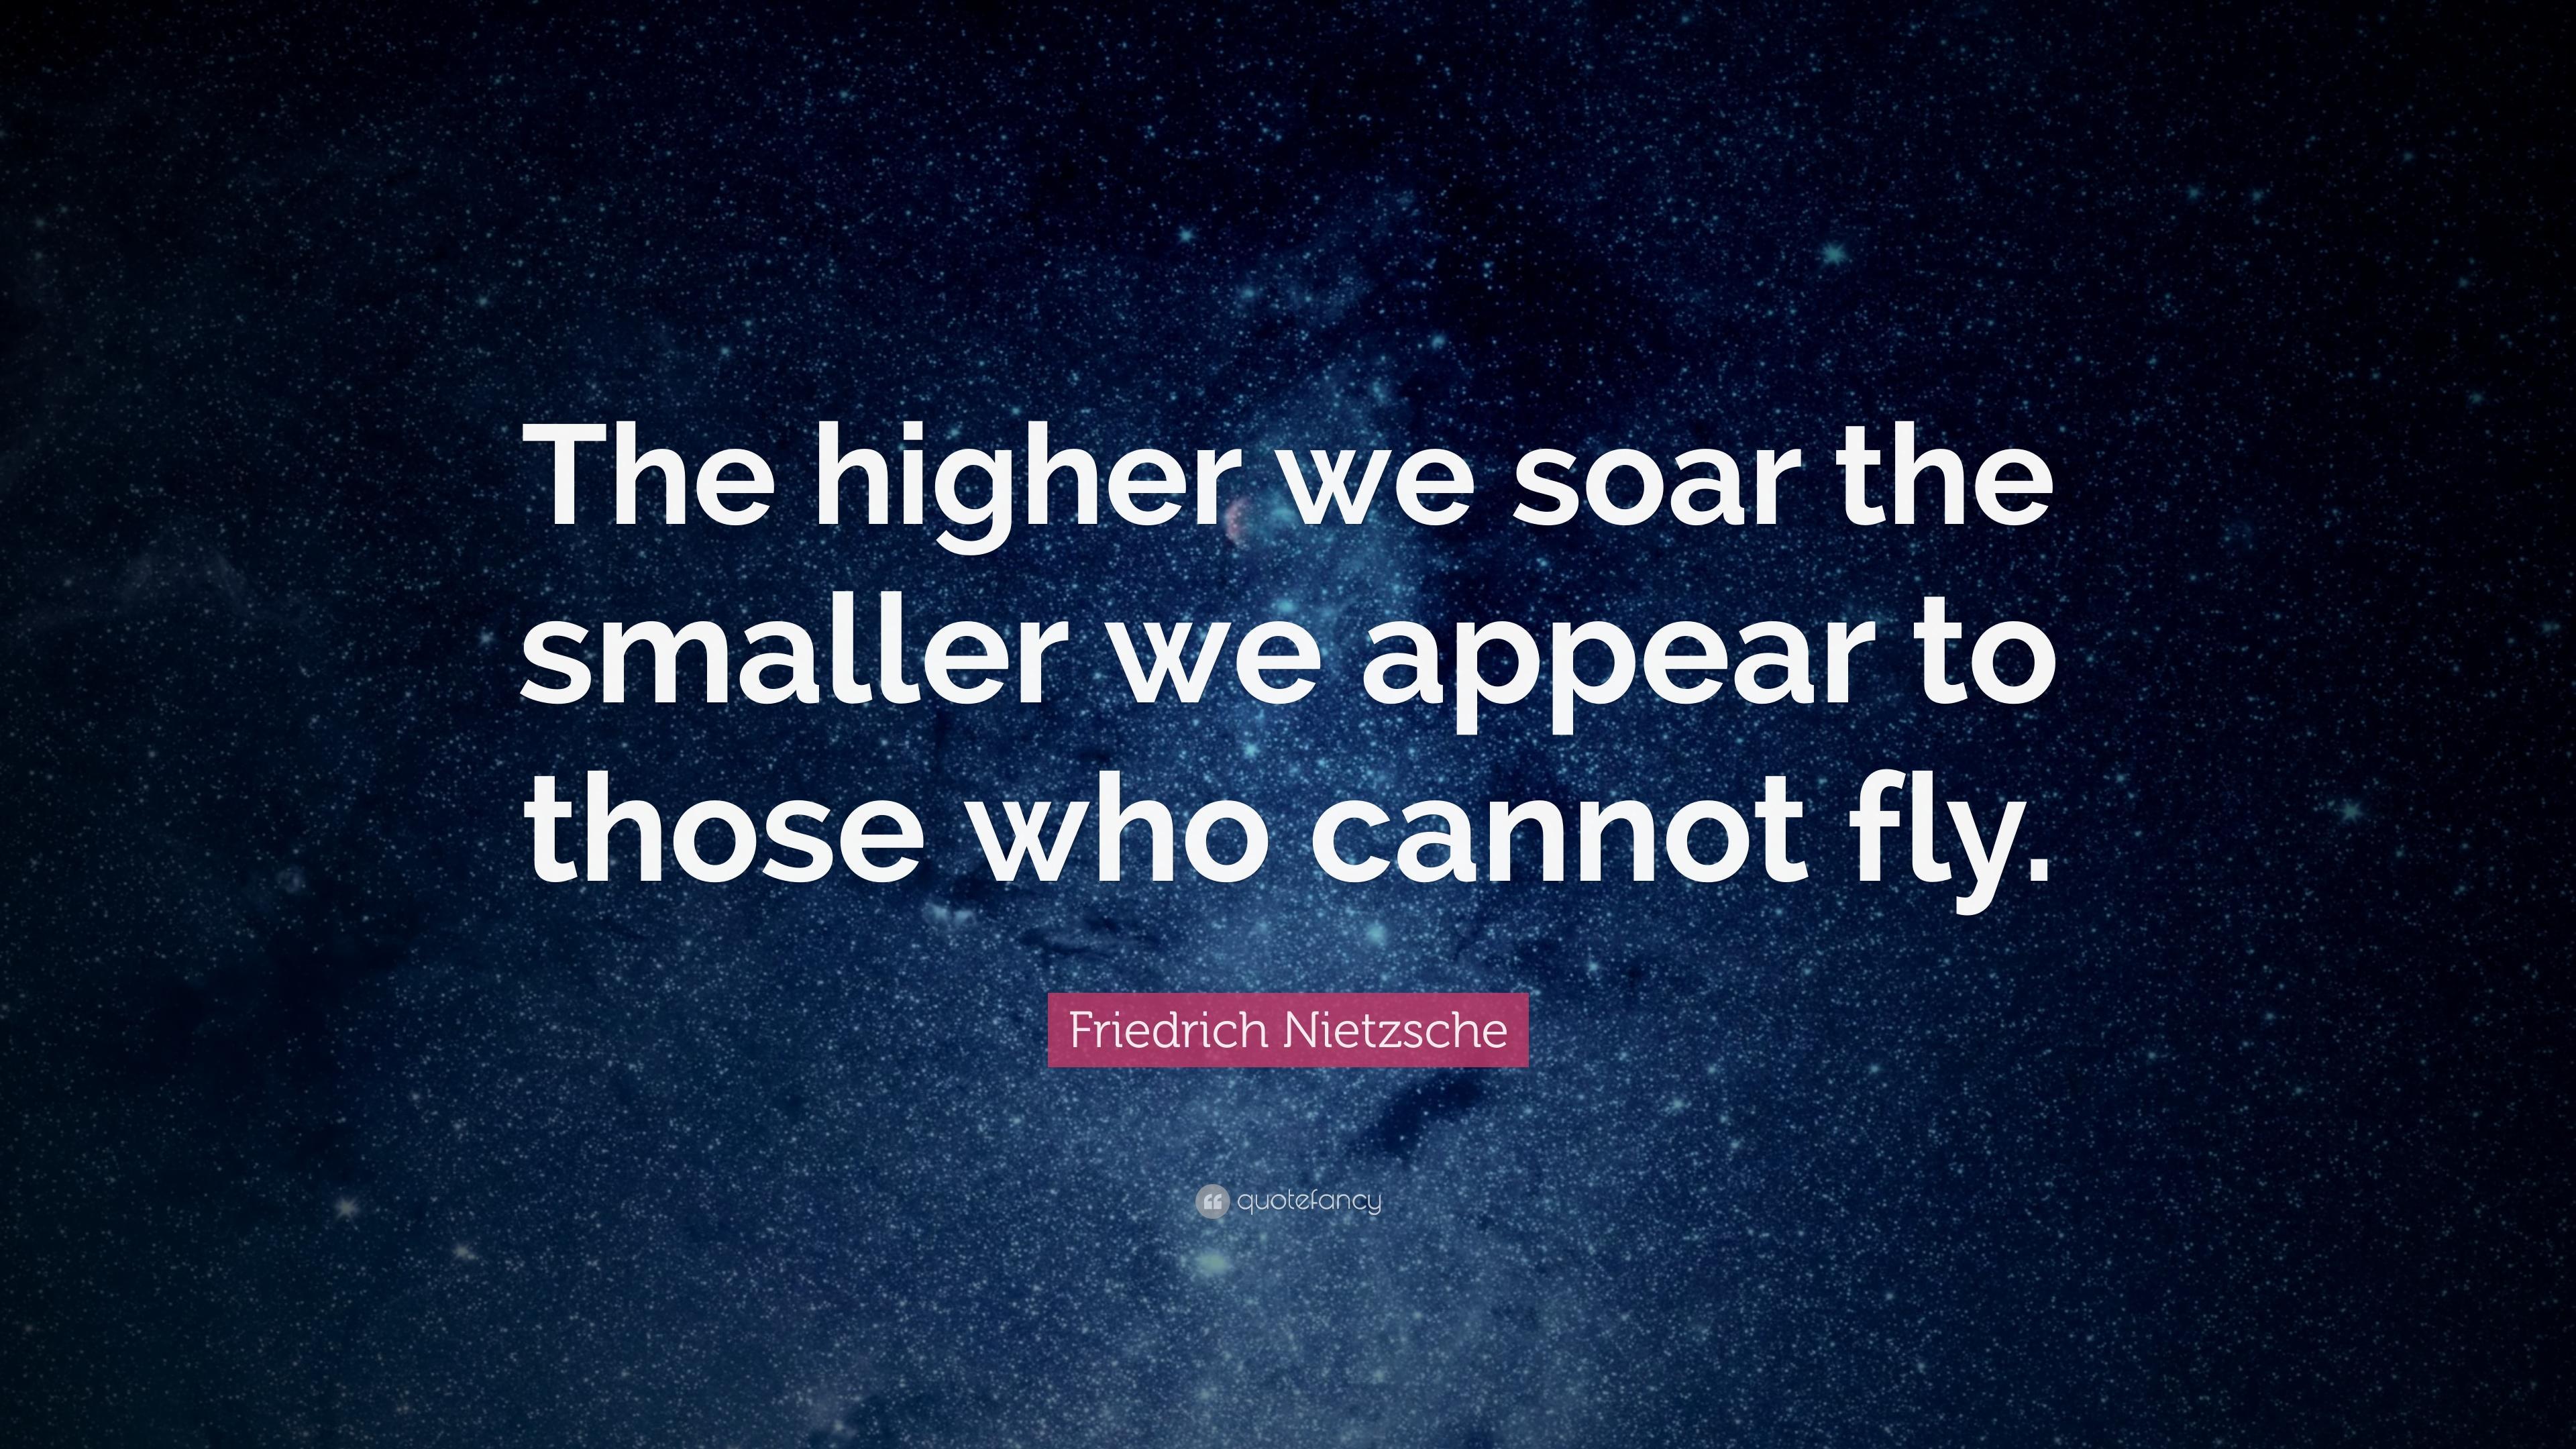 Friedrich Nietzsche Quote: “The higher we soar the smaller